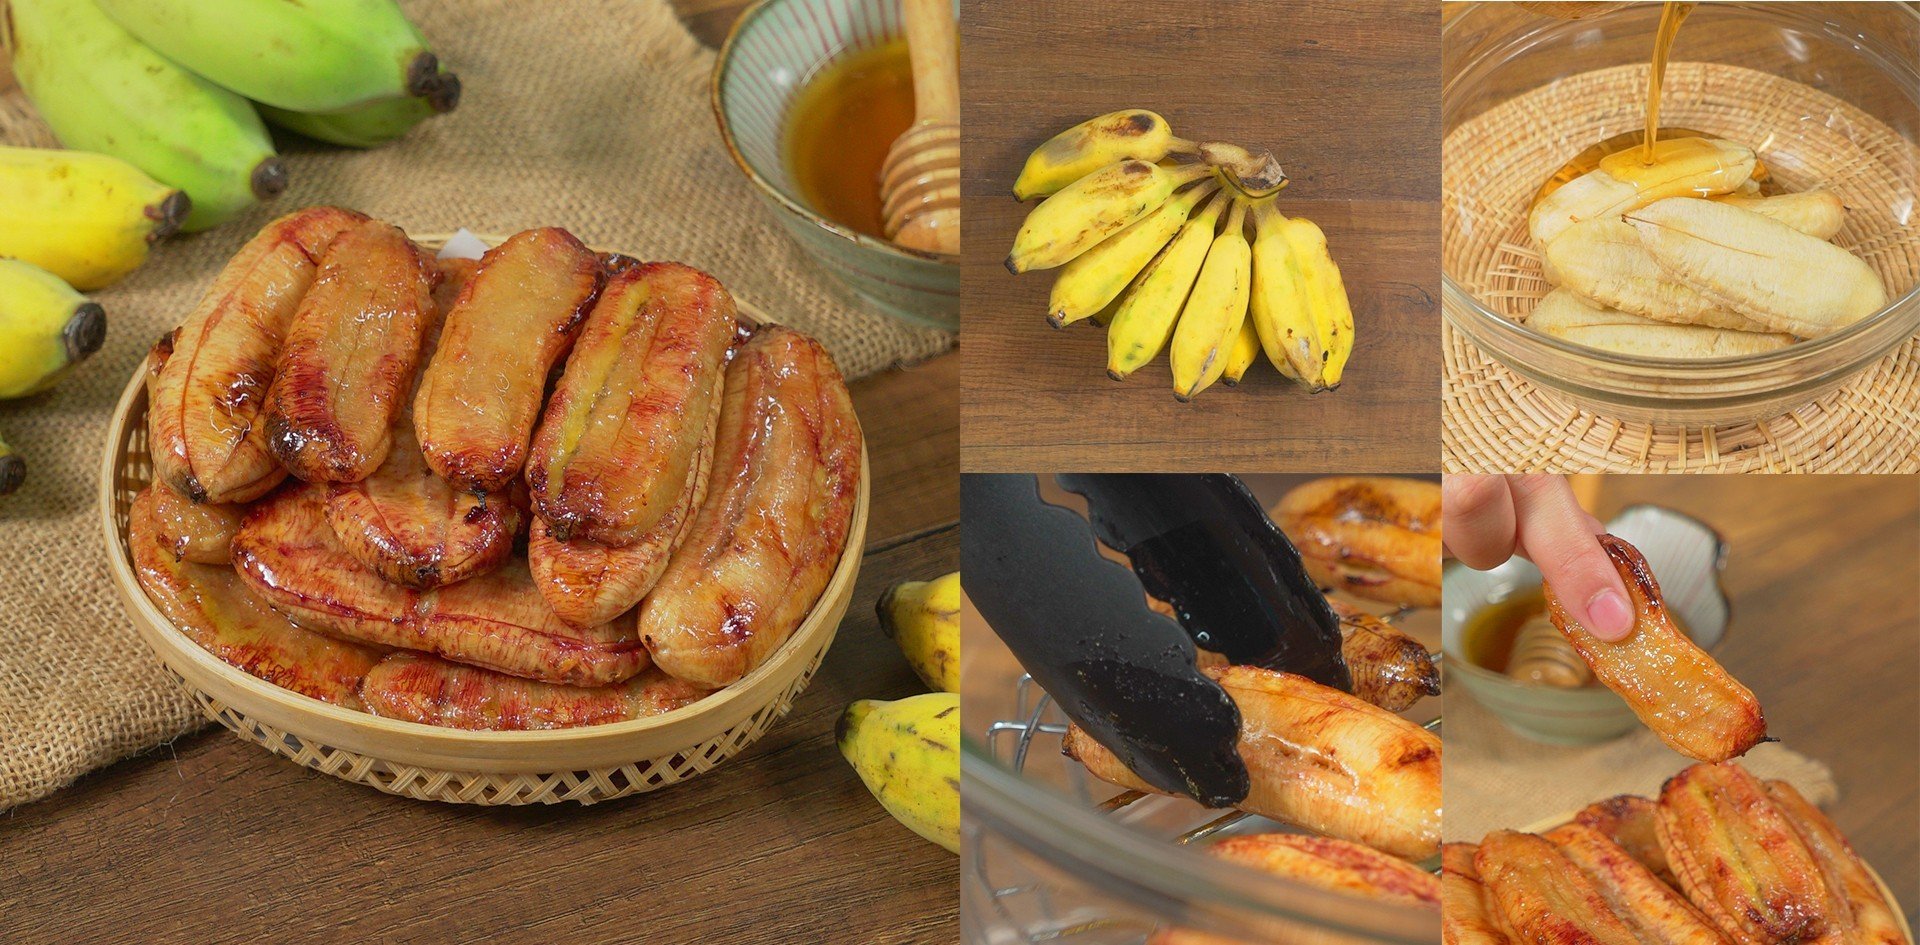 วิธีทำ “กล้วยอบน้ำผึ้ง” เมนูของหวานละมุนลิ้น ฟินจนหยุดกินไม่ได้! เมนูอาหารว่าง